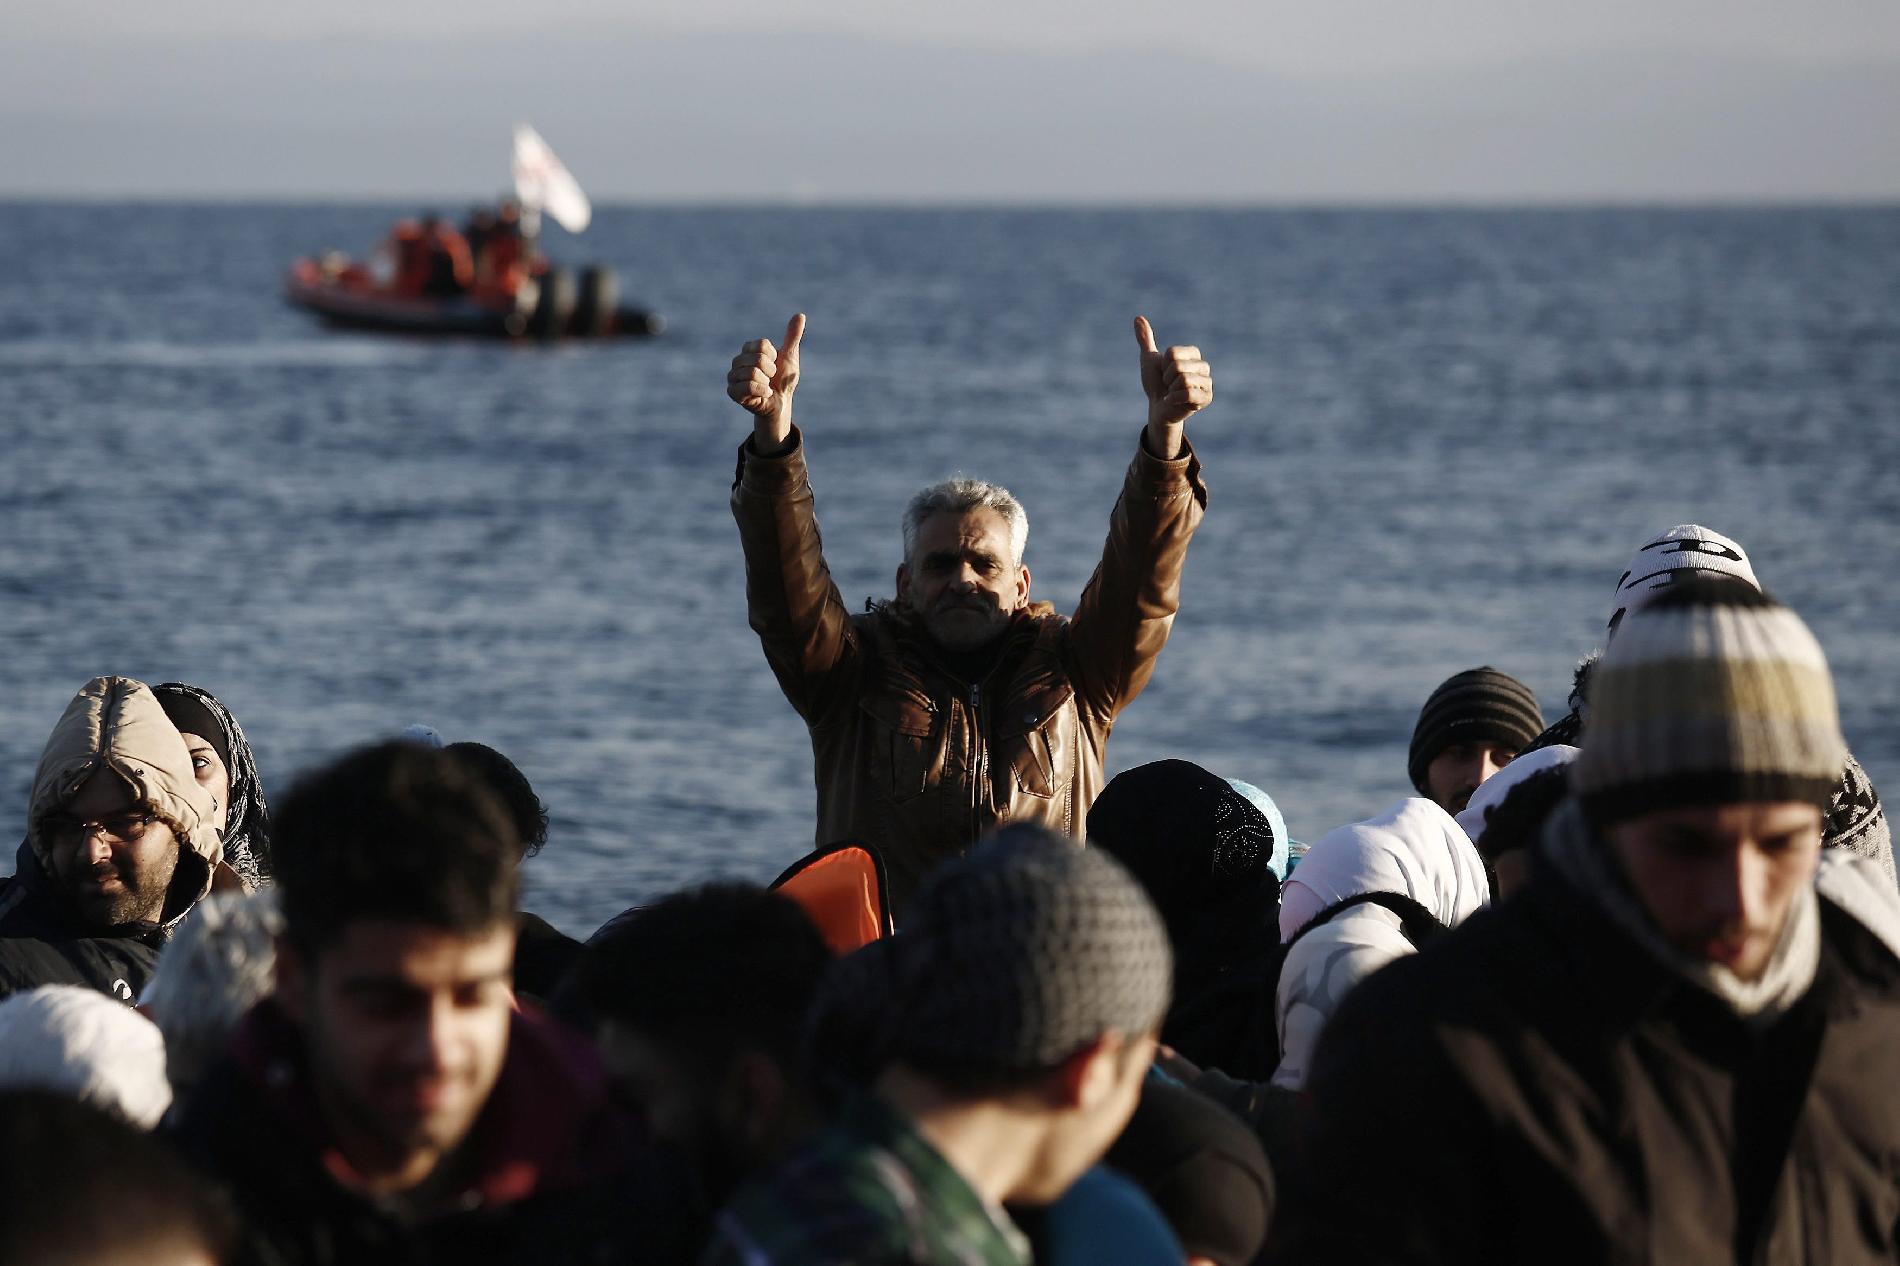 Az európaiak többsége továbbra is aggodalommal tekint az illegális migrációra